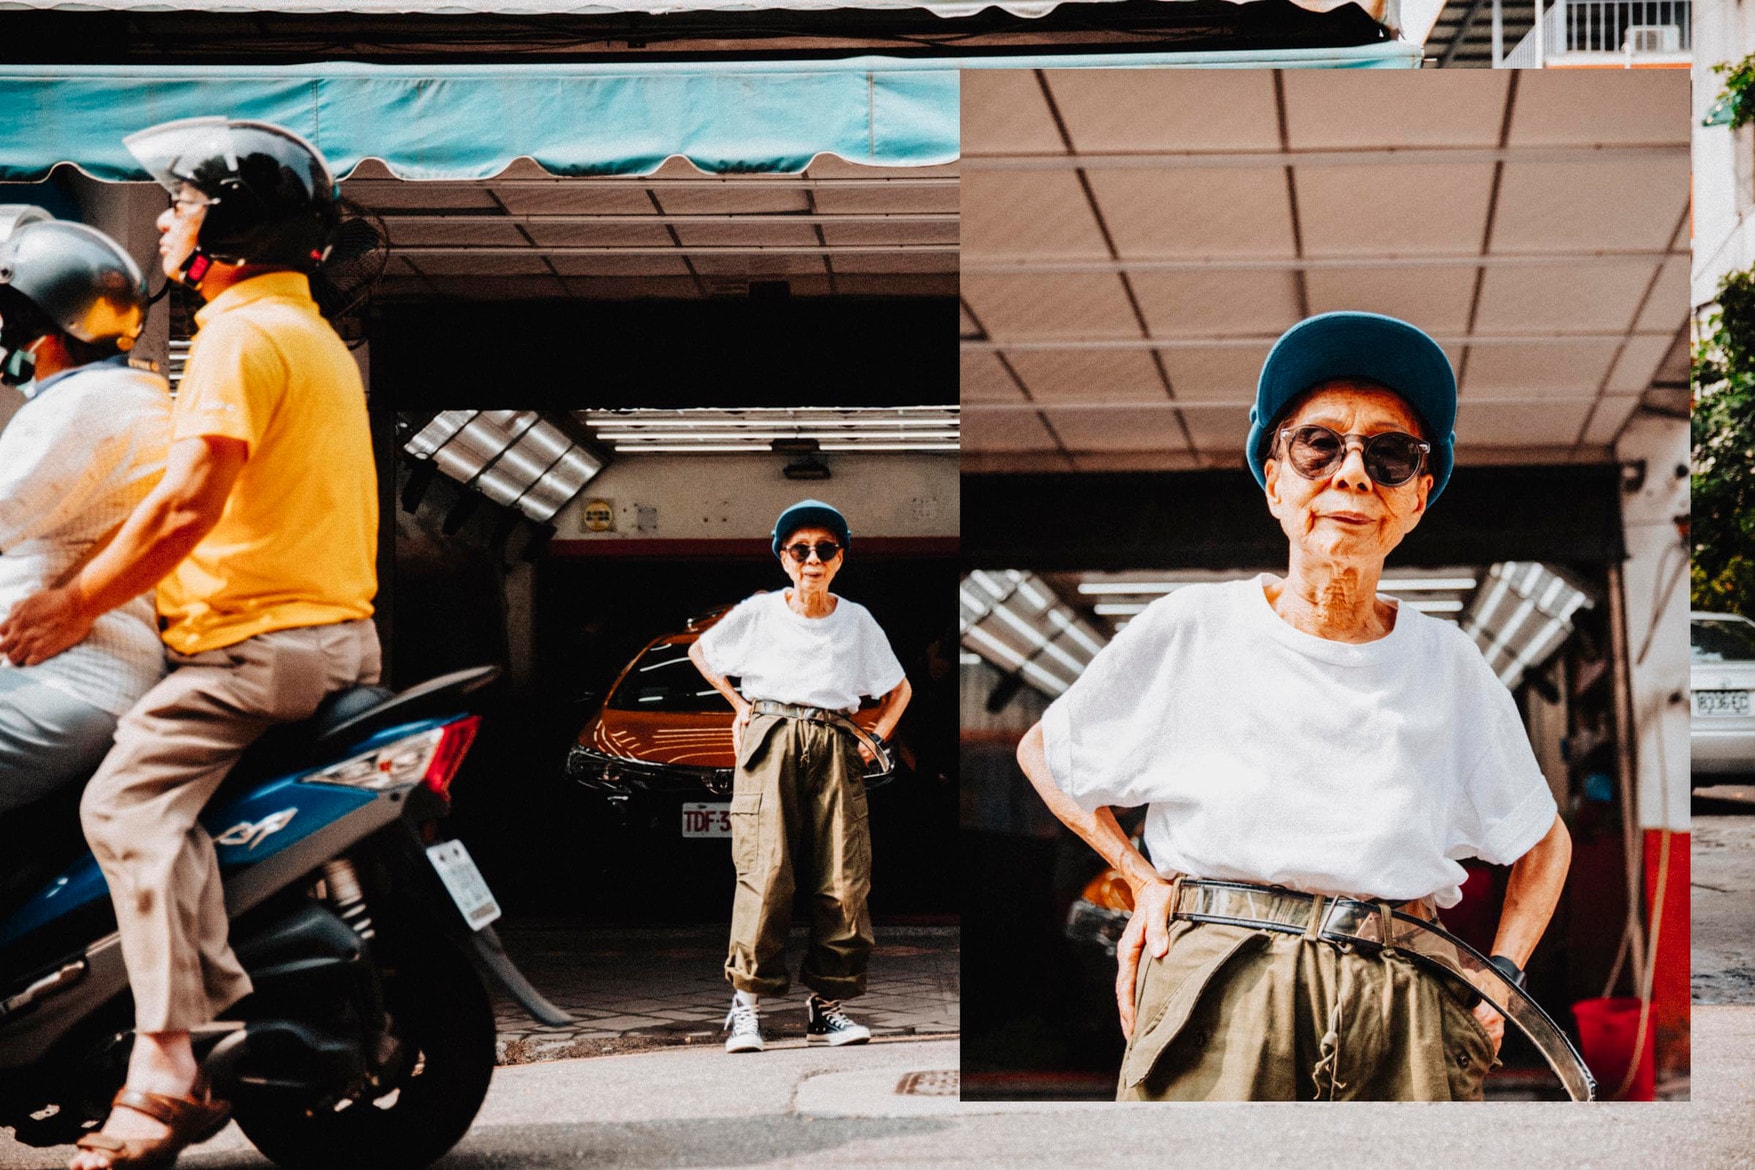 Interviews：90歳を迎えた台湾のストリートクイーン ムーン・リン 〈Supreme〉や〈Y-3〉を自由自在に着こなすファンキーなお婆ちゃんのファッションへ対する想いとは Instagramでご存知の方も多いであろう、90歳の卒寿を迎えたMoon Lin（ムーン・リン）は、64歳で活躍するスケートボーダーのLena Salmi（レナ・サルミ）のようにストリートウェアには年齢制限があるという考えを無視し、独自のファッション論を展開し人生を謳歌している。彼女に注目するおよそ94,000人のフォロワーは、Linが行う〈Supreme（シュプリーム）〉や〈Y-3（ワイスリー）〉のようなアイテムを日々のファッションに取り入れる比較的簡単でやりやすいミックススタイリングに魅力を感じている。先日『HYPEBAE』によって行われた、彼女の趣味趣向や彼女の持つ影響力について、また、ライフスタイルを深く掘り下げた彼女へのインタビューを紹介しよう。  ー 新しいファッションを見つけることに感動することはありますか？  わたしにとって、わたしのスタイルは特別“ファッショナブル”というわけではありません。私は90歳で、ある意味それが全て。だから私はやりたいことをその時にしたいし、快適な服や好きな色、好きなスタイルで洋服を着たいと思っていますよ。周りの人が何を思っているかの心配は全くしません。自分が着たいから着る、ただそれだけなんです。   ー モチベーションの一環としてのソーシャルメディアについて、何か想うことはありますか？  そうですね。わたしは、朝起きて自分自身を写真に撮って記録することに面白みを感じています。80代半ばになったときに、起きるのも億劫で、体調のこともありますし部屋で静かにしていたいと思っていました。でも自分自身がドレスアップする方法を学んだ後は、欲しいものへの欲求やそれを身につける楽しみが朝目覚めた時の興奮材料やモチベーションになったんです。そうですね、やっぱり好きな服で自分を着飾って写真を撮るのが好きですね。   ー どんなブランドをチョイスしますか？  私は〈Supreme（シュプリーム）〉、〈PUMA（プーマ）〉、〈Nike（ナイキ）〉、〈adidas（アディアダス）〉のような西洋のブランドが基本的に好きです。でも、今注目していて今後サポートしていきたいと思っているのが、〈A A Stairs（以下ALT）〉や『Plain-Me』のような台湾のブランド。〈ALT〉についてはすごく好きなのですが、理由としては台湾の若者によって設立され、そのブランドの持つ魅力によって人気が高まりシーンを盛り上げているから。私は若い頃に食料品の店を持っていましたが、生計をたてることは簡単ではない。何かを作り、それを成し遂げ、軌道にのせることは難しいことです。大きなブランドを育てるためには大きな努力をしなければなりません。ですから尊敬しますし、サポートもしたいと思っています。  ー あなたのインスピレーション源を教えてください。  私にインスピレーションを与えてくれていた人々はみんな天国に行きました。Teresa Teng（テレサ・テン）のような美しさを持ち、勤勉で若くエネルギッシュで、常に注目していたい若手スターも何人かいます。例えば、Justice Lin（ジャスティス・リン）。彼のライフスタイルは魅力的で、理想的な家族の姿をしているのではないかしら。彼の子供たちもとてもかわいくて常に注目してしまう。他にはTing Yang（ティン・ヤン）という少し難しいけれど面白い少女など、とにかくインスピレーションを与えてくれる人は沢山います。  Linのインタビュー全文を読みたい方は、是非『HYPEBAE』までアクセスしてみてほしい。  ちなみに、〈Supreme〉の2018年秋冬コレクションで特に注目されているアイテムを調査した『SupremeCommunity』のアンケート結果はもう確認済み？